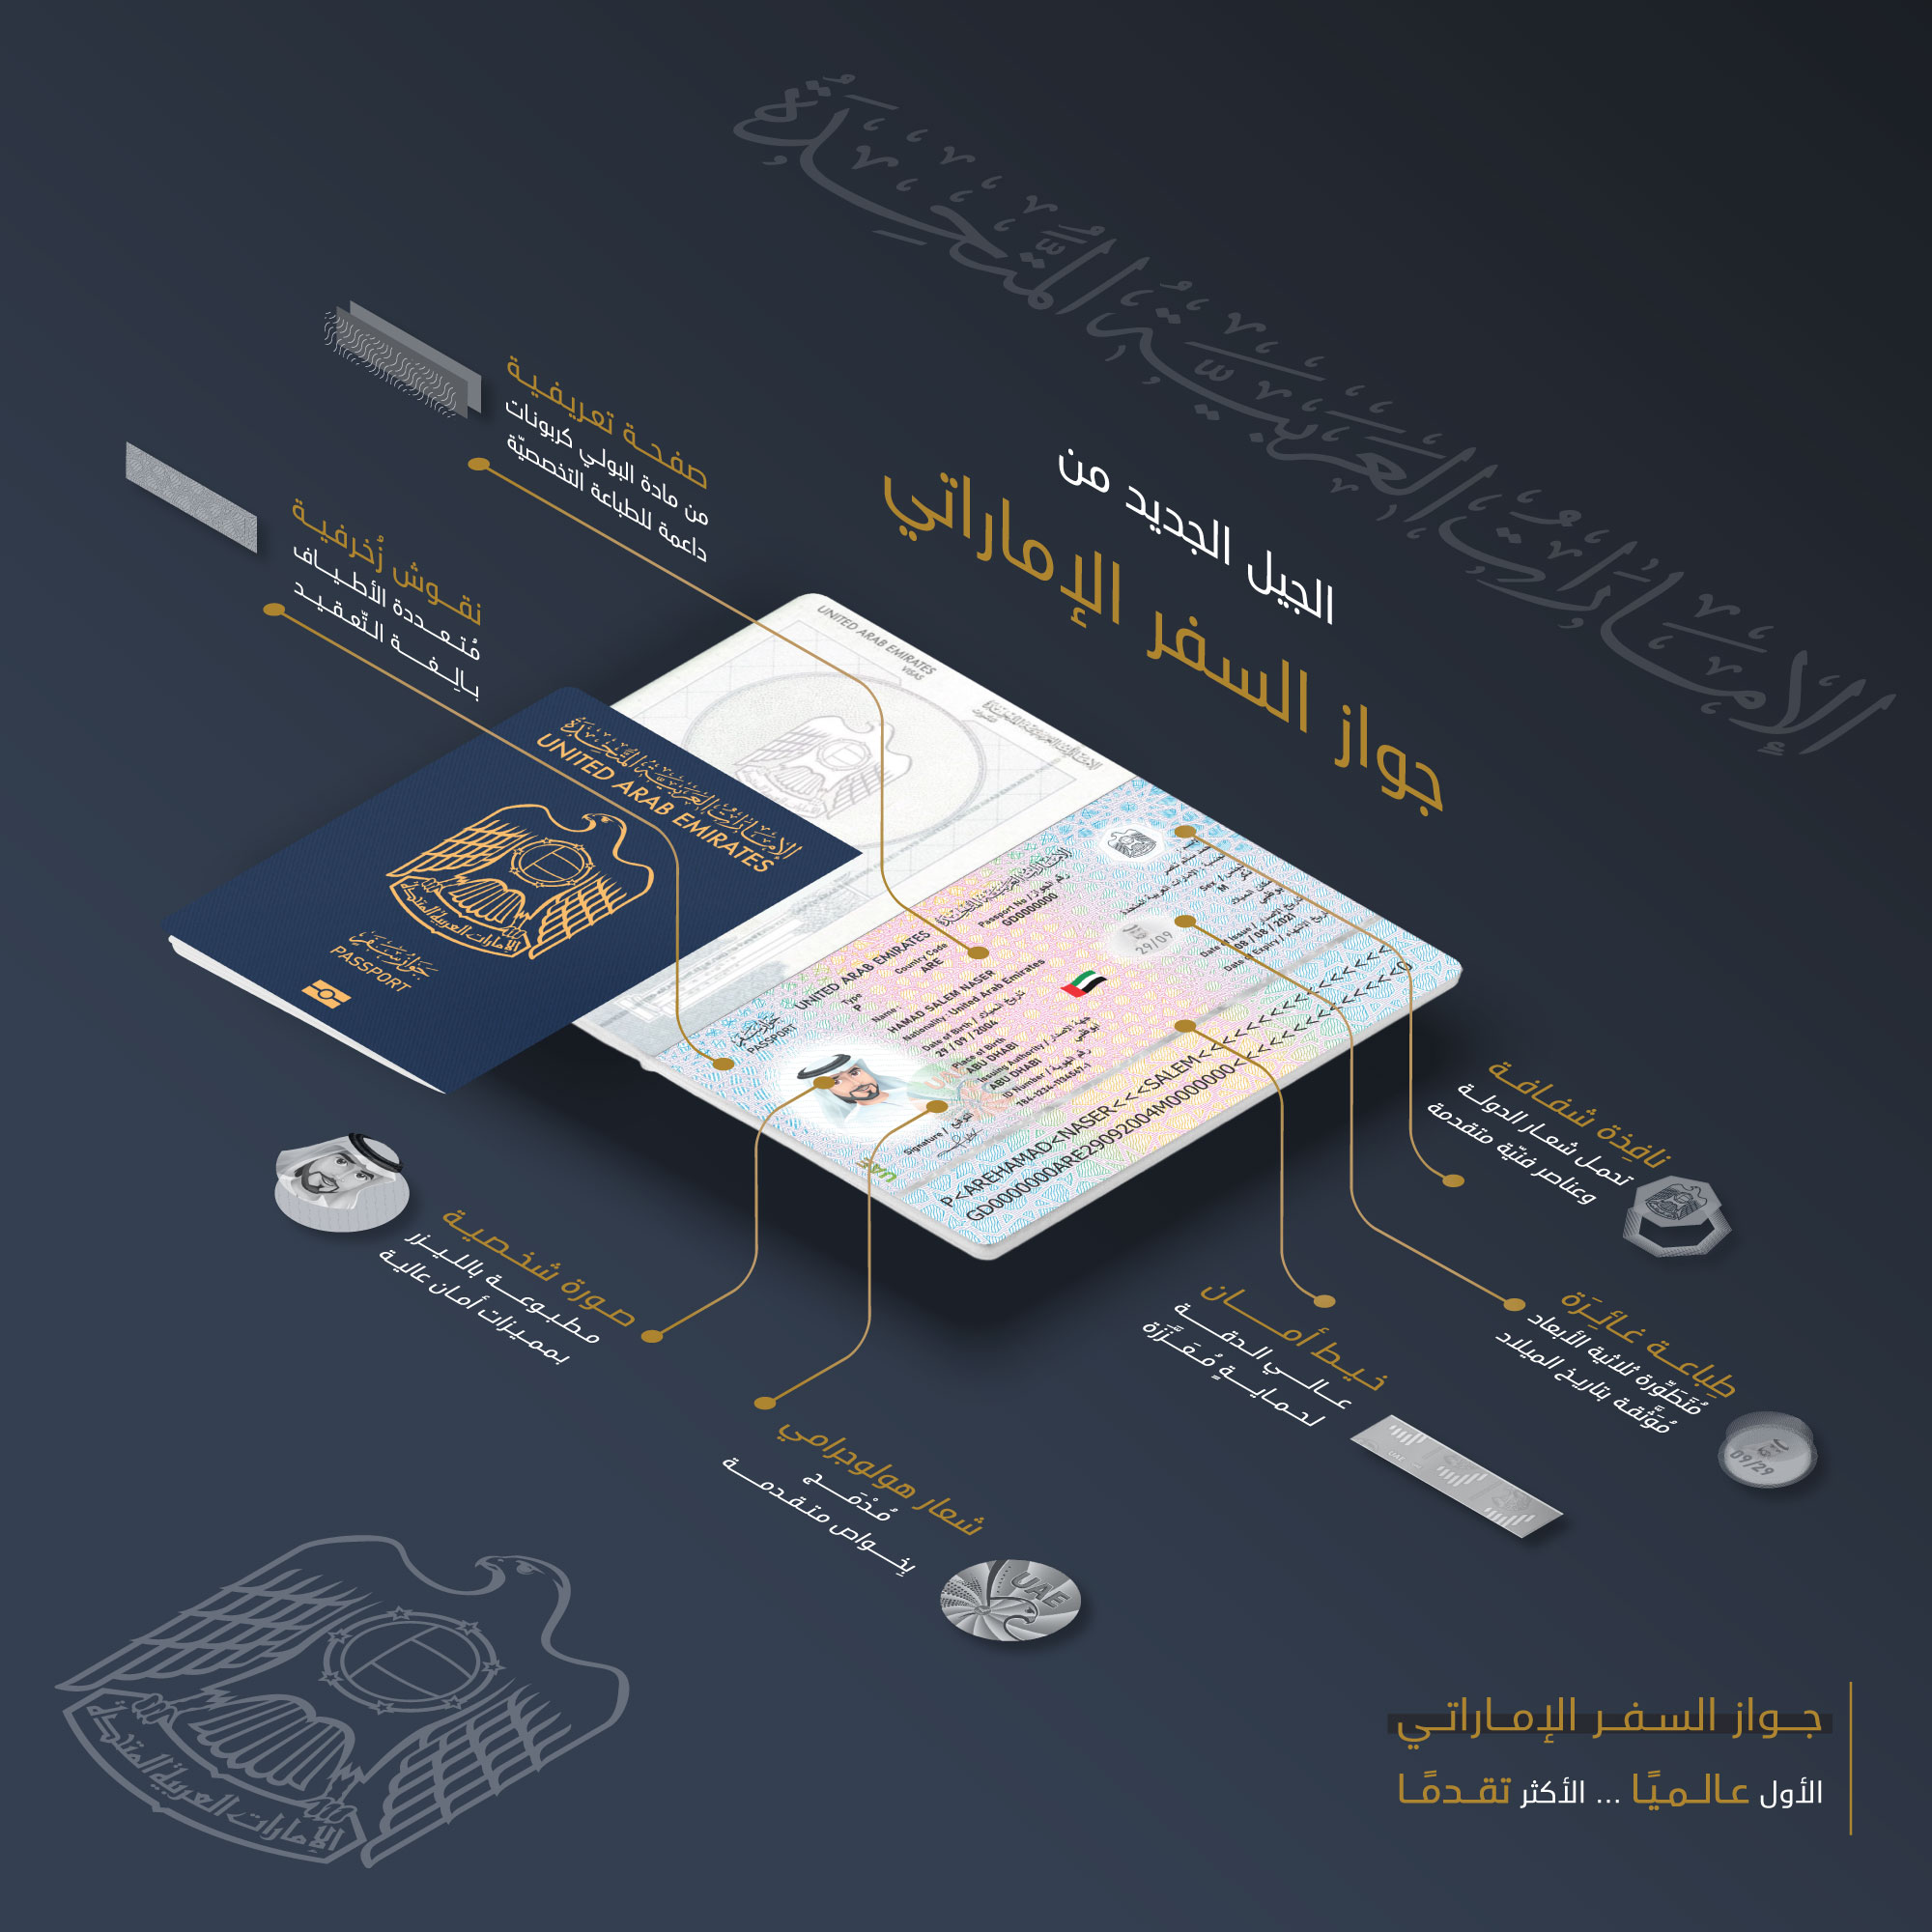 الهيئة الاتحادية للهوية والجنسية والجمارك وأمن المنافذ تصدر الجيل الجديد من جواز السفر الإماراتي بدءً من سبتمبر القادم-0